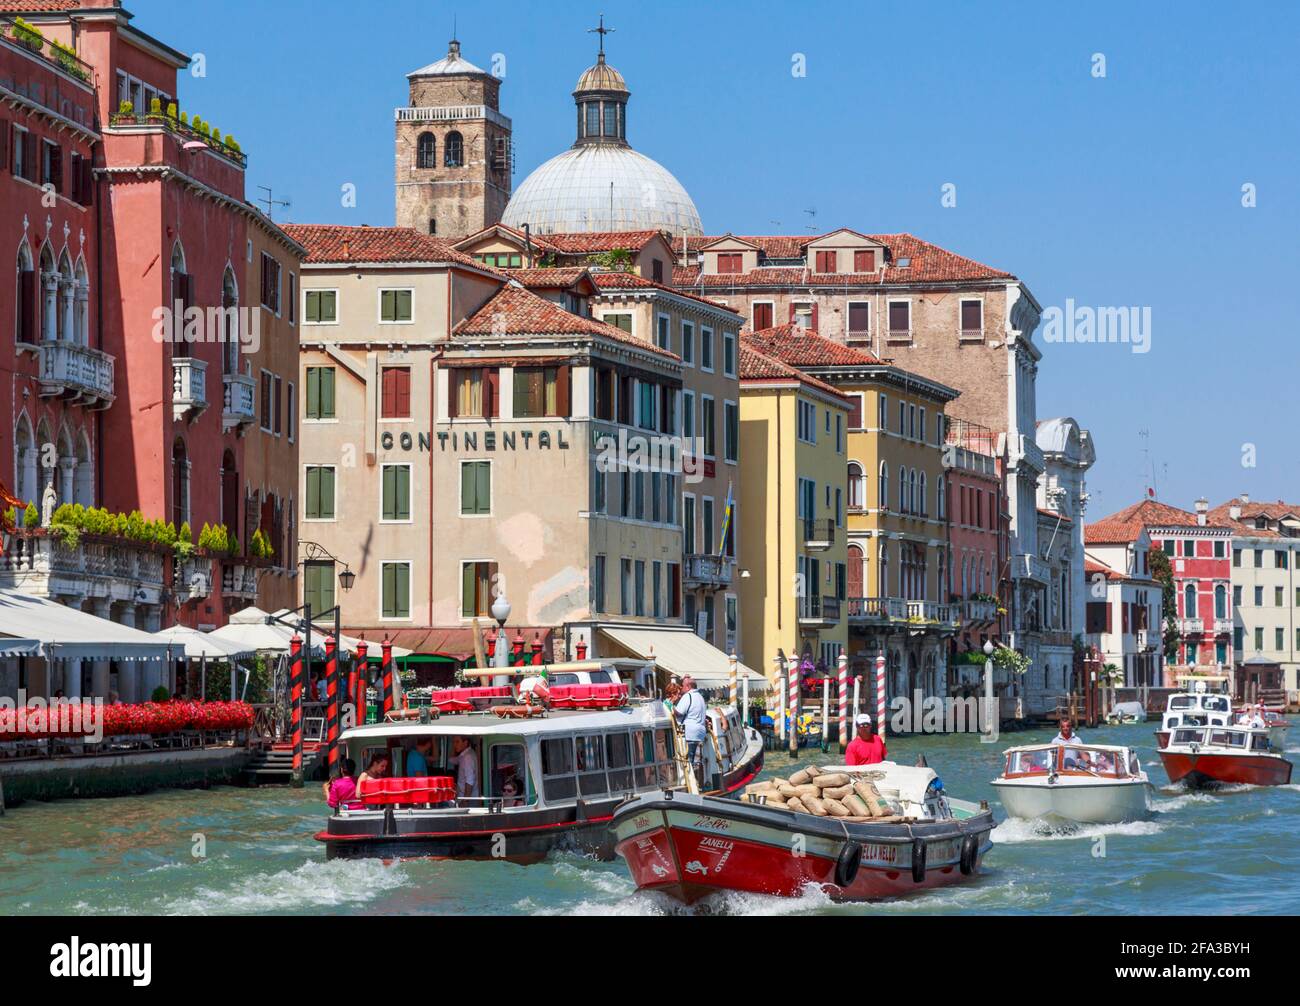 Venise, province de Venise, région de Vénétie, Italie. Scène typique sur le Grand Canal. Venise et sa lagune sont un site classé au patrimoine mondial de l'UNESCO. Banque D'Images